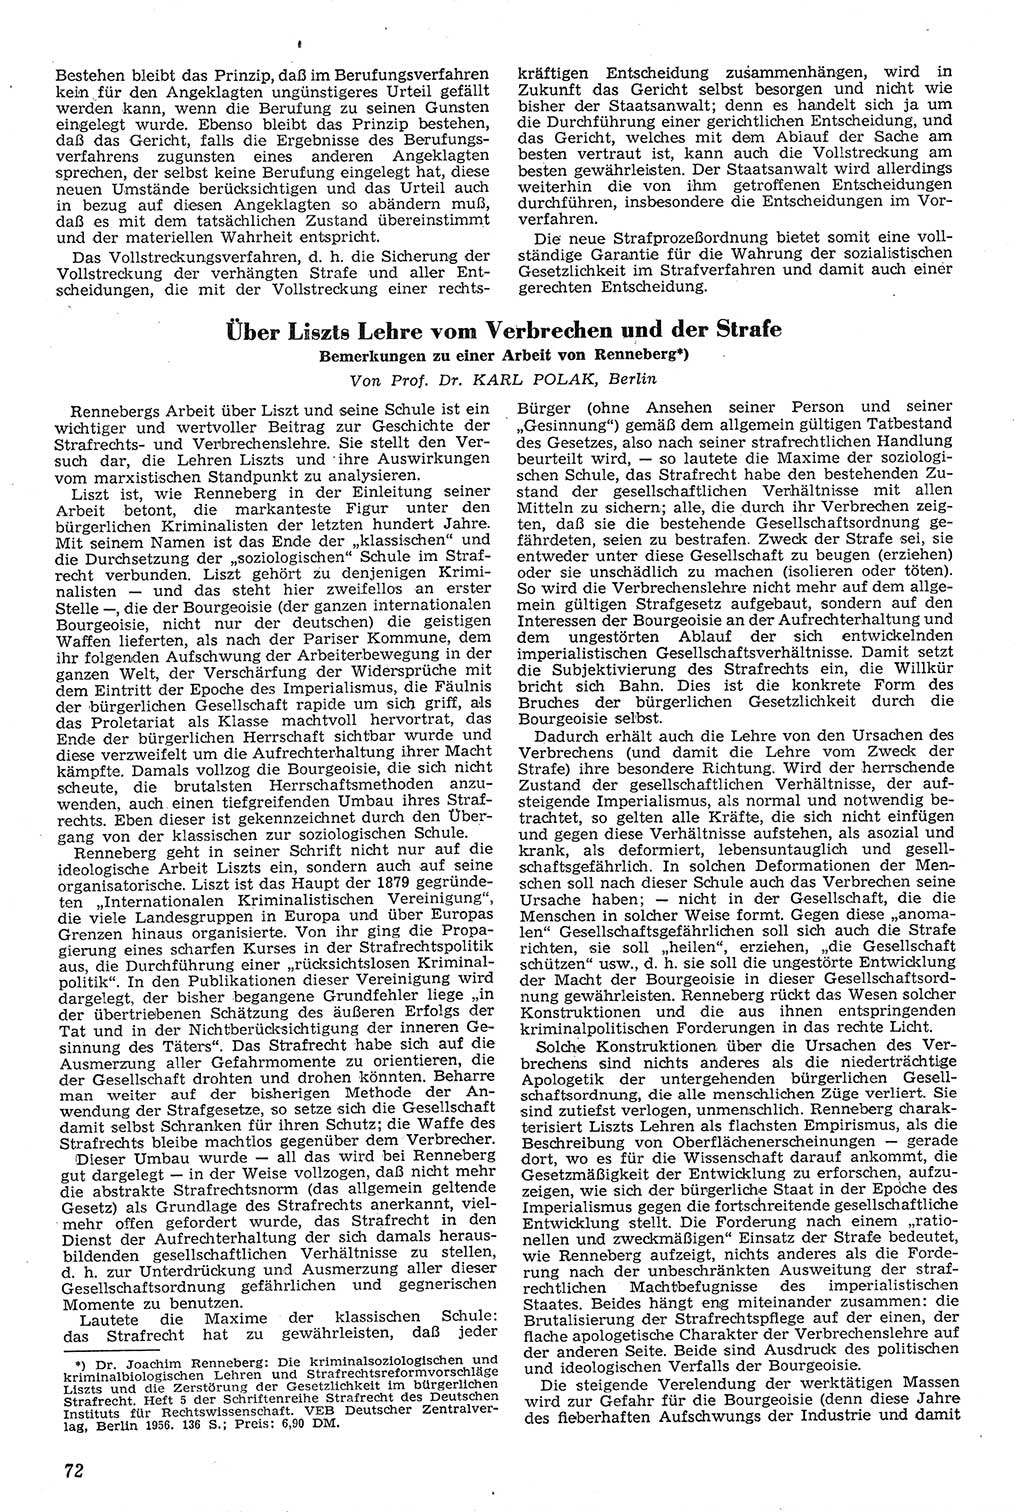 Neue Justiz (NJ), Zeitschrift für Recht und Rechtswissenschaft [Deutsche Demokratische Republik (DDR)], 11. Jahrgang 1957, Seite 72 (NJ DDR 1957, S. 72)